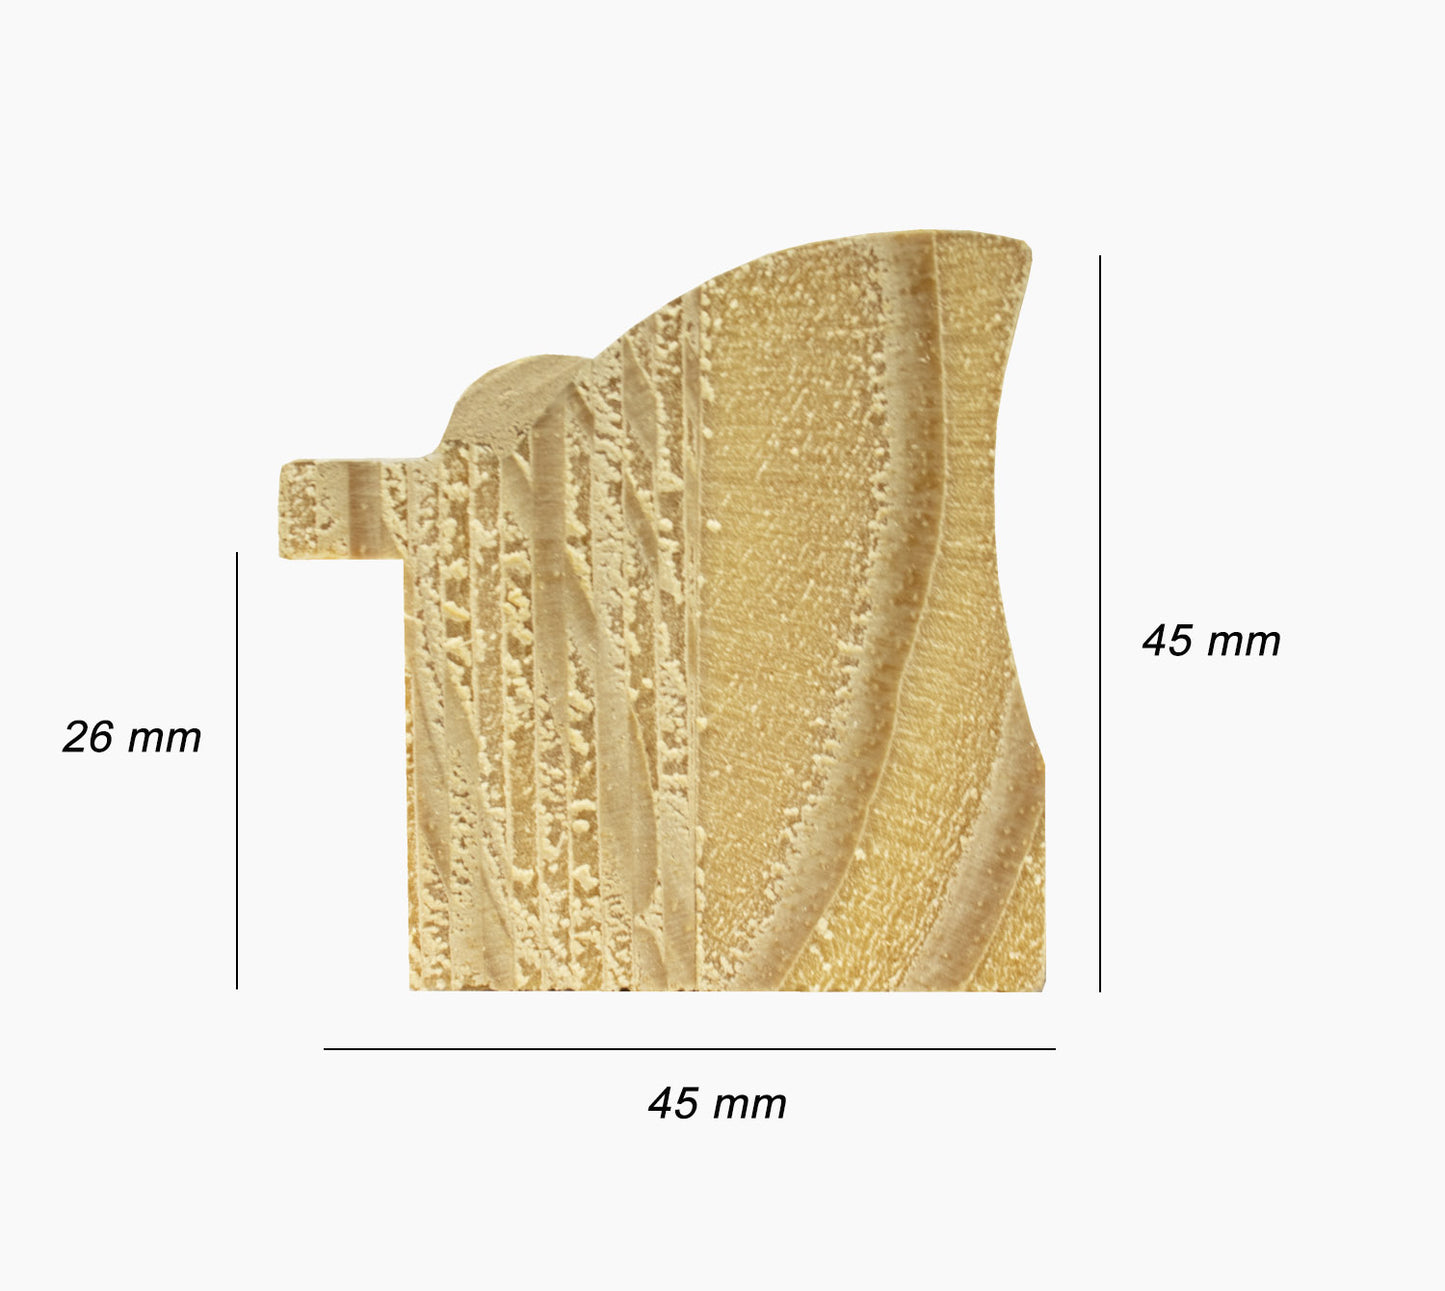 228.010 Mouldings for wooden frames in gold leaf profile measures 45x45 mm